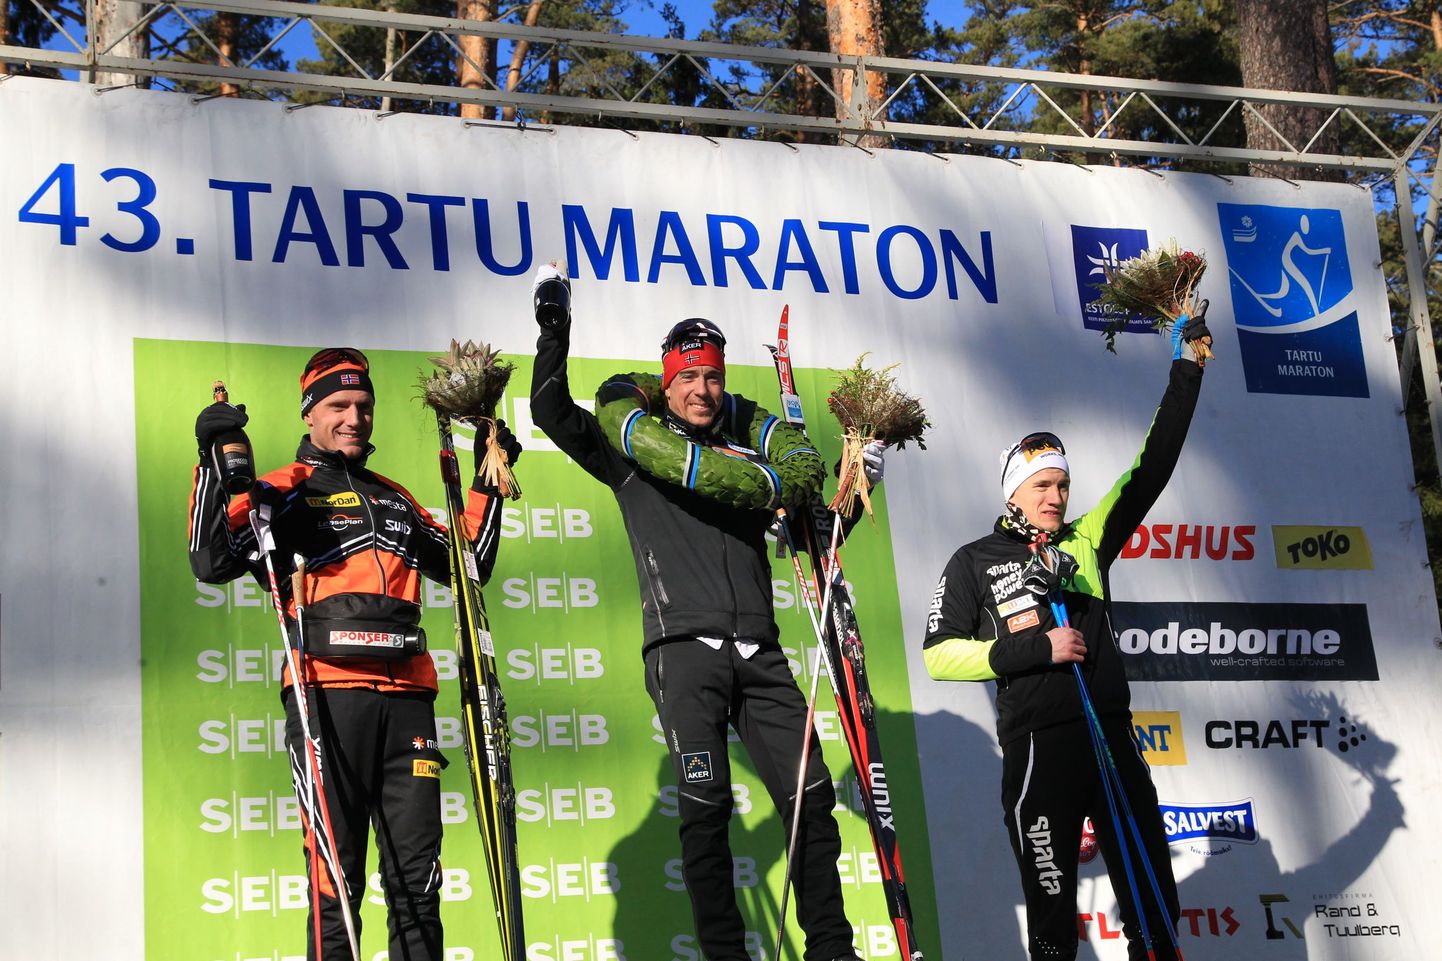 Tartu 43. maratoni võitjad. Keskel Eldar Rönning (Norra), vasakul Audun Laugaland (Norra) ning paremal Martti Himma (Tartu maakond).